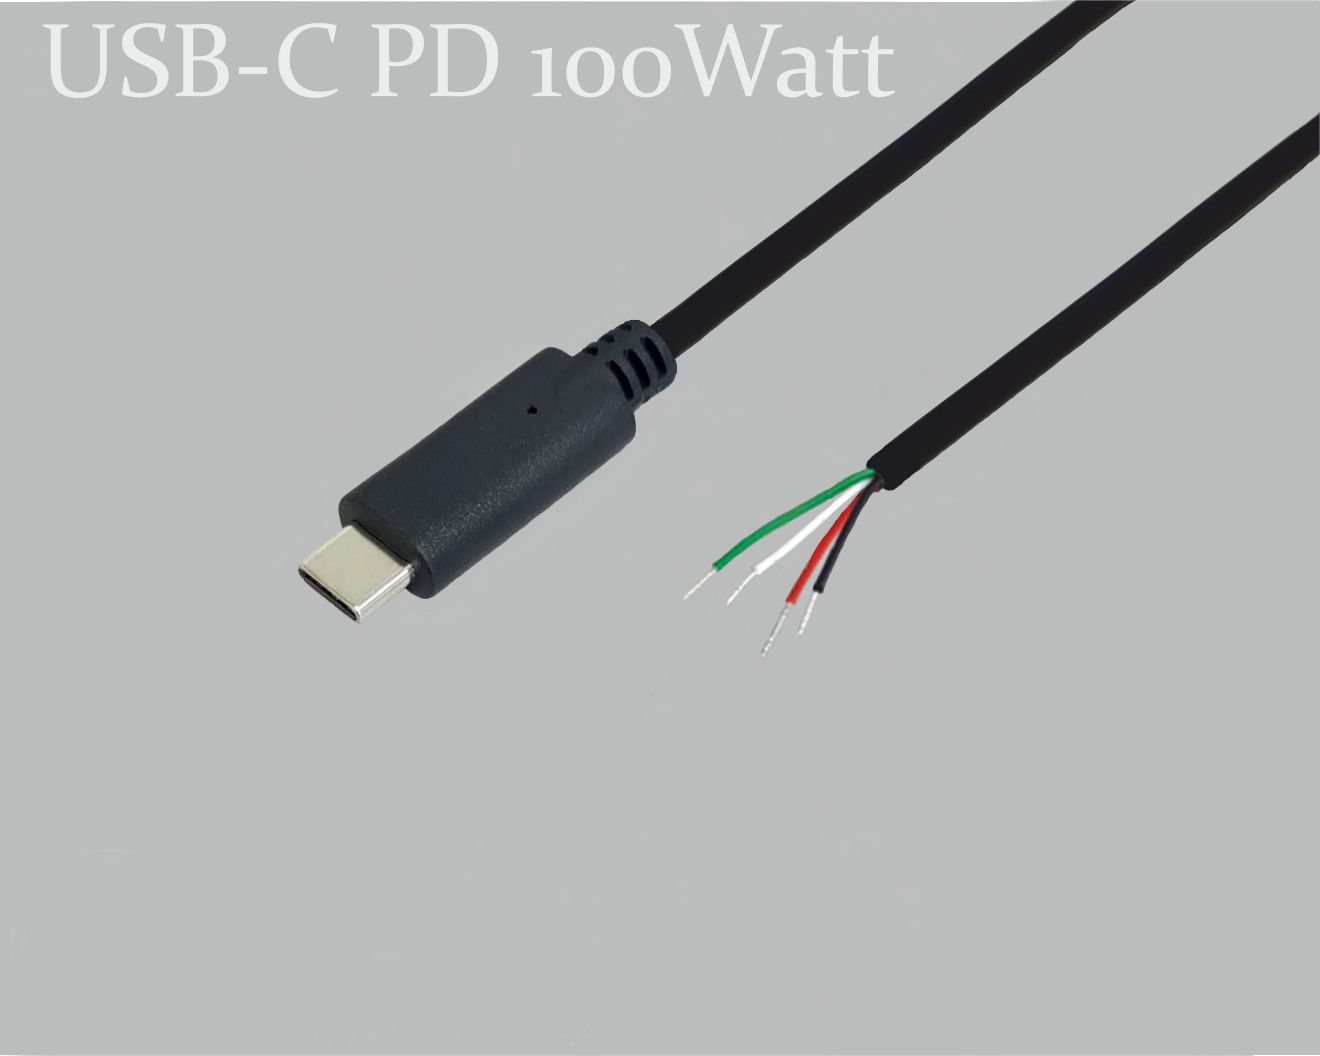 USB-C Anschlusskabel, PD Power Delivery 100W(5A/20V) mit E-Mark Chip zum schnell laden, USB-C-Stecker gerade auf offenes Ende, 1,0m, schwarz, abgemantelt und verzinnt